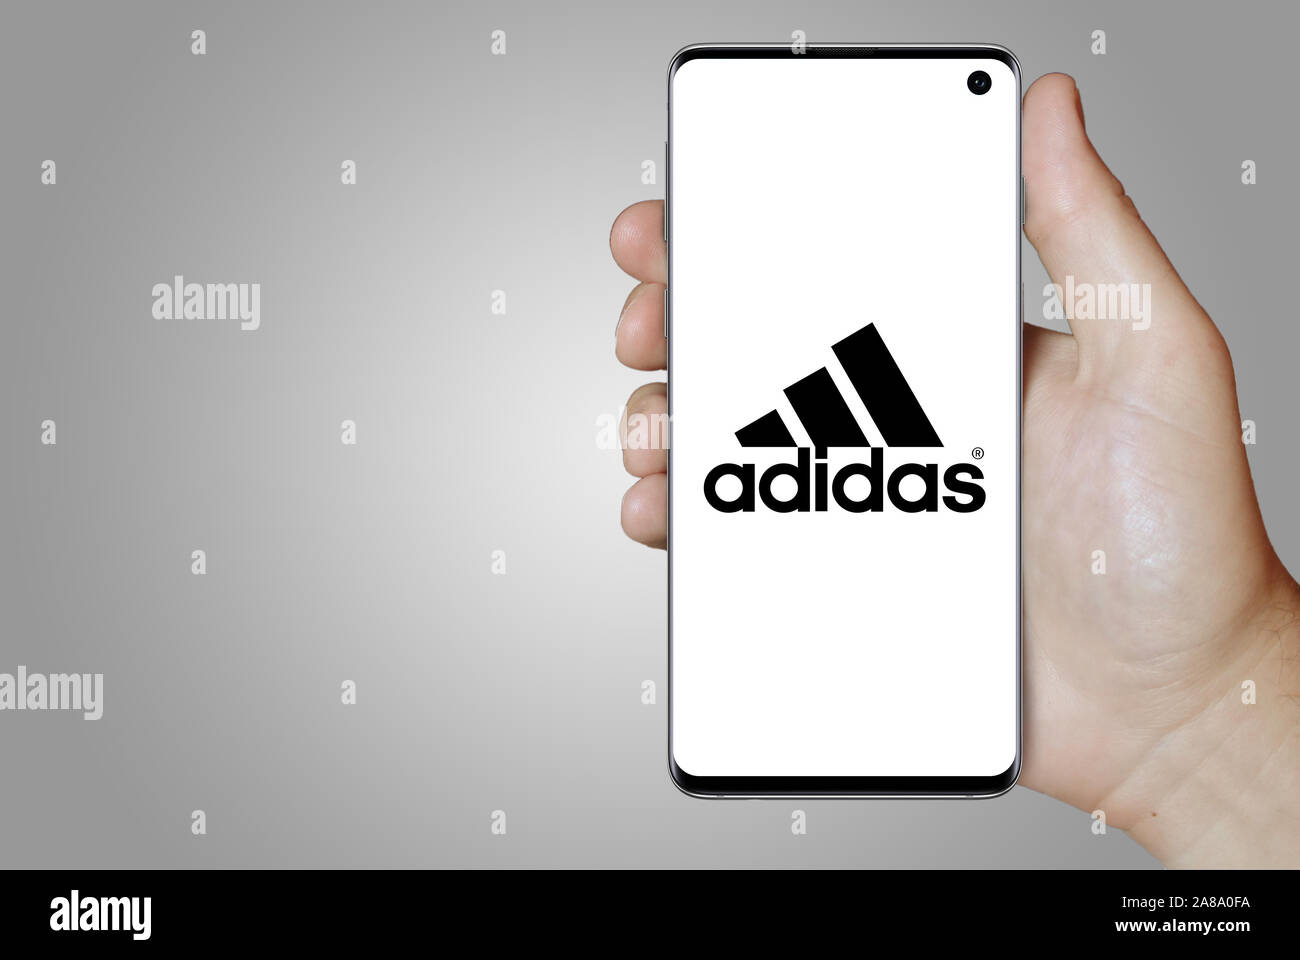 Logo der öffentlichen Unternehmen Adidas auf dem Smartphone angezeigt. Grauer Hintergrund. Credit: PIXDUCE Stockfoto